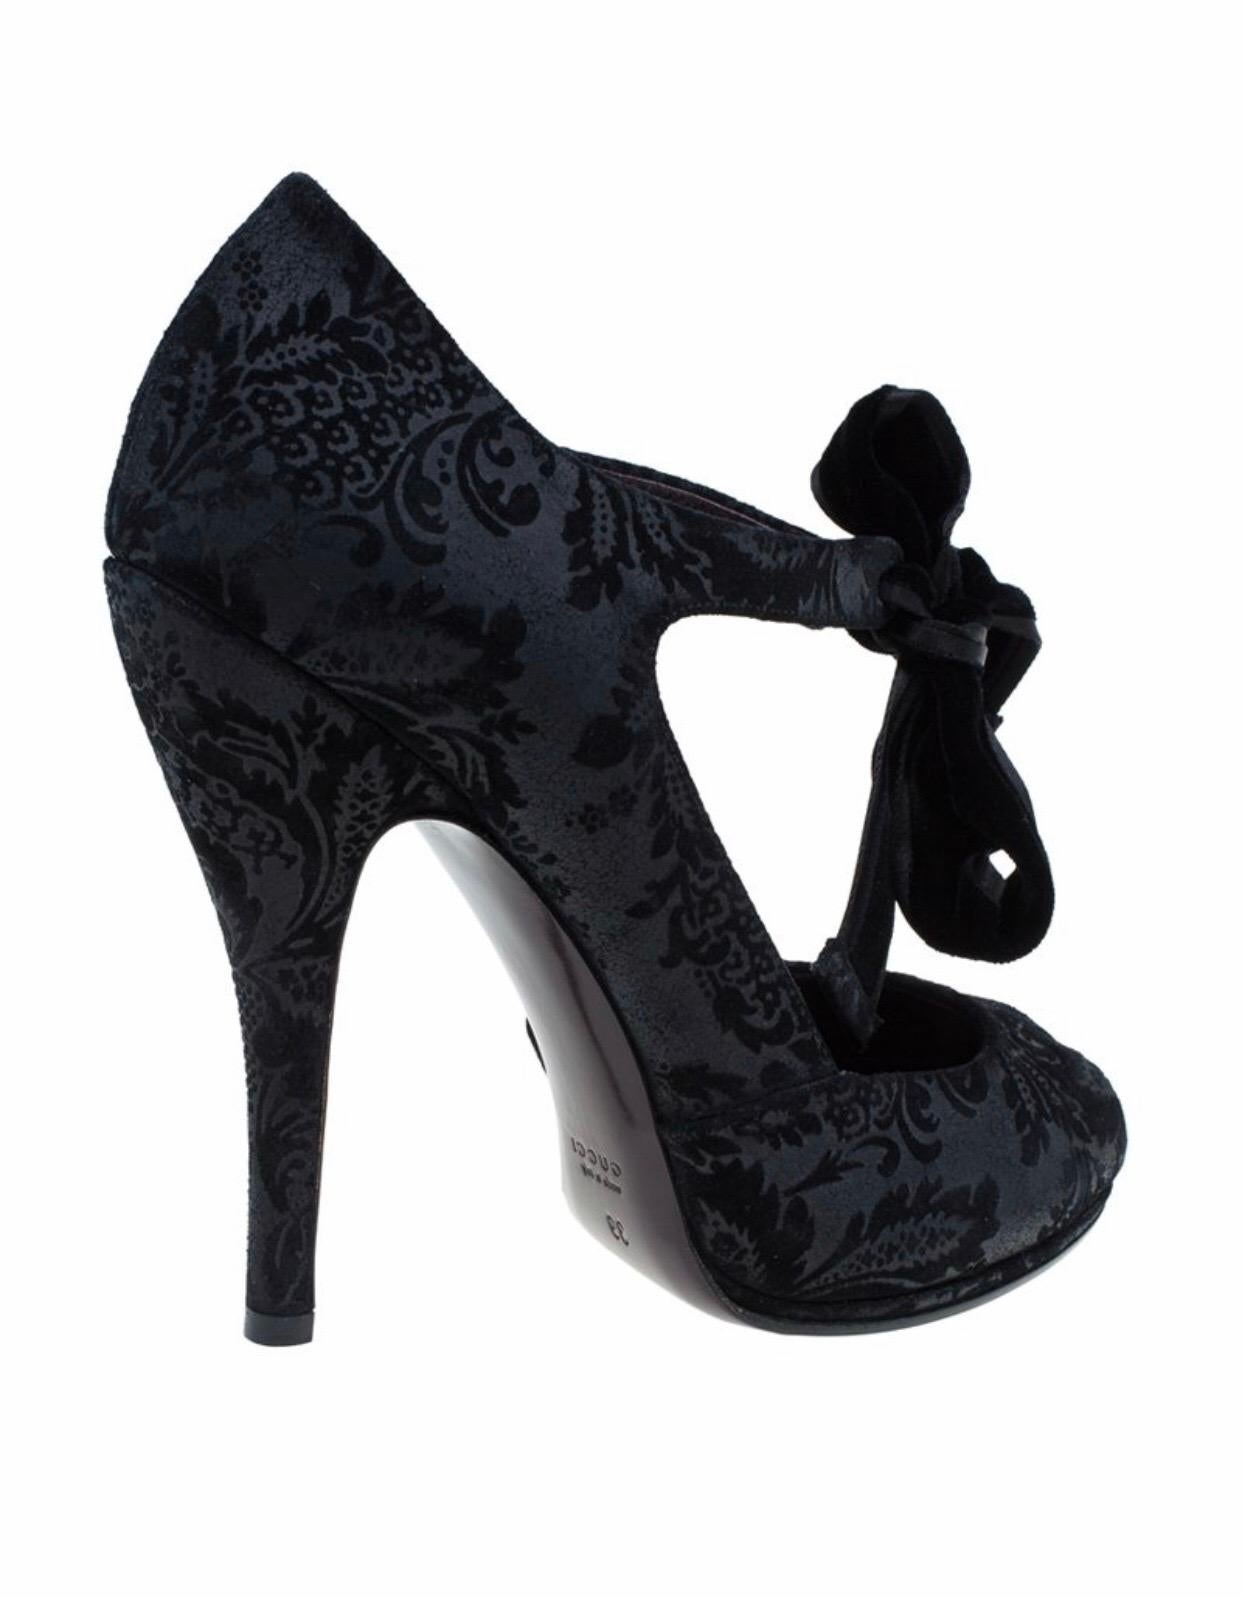 Women's NEW Black Gucci Suede Brocade Pineapple High Heel Sandals Pumps Velvet Bowtie 38 For Sale